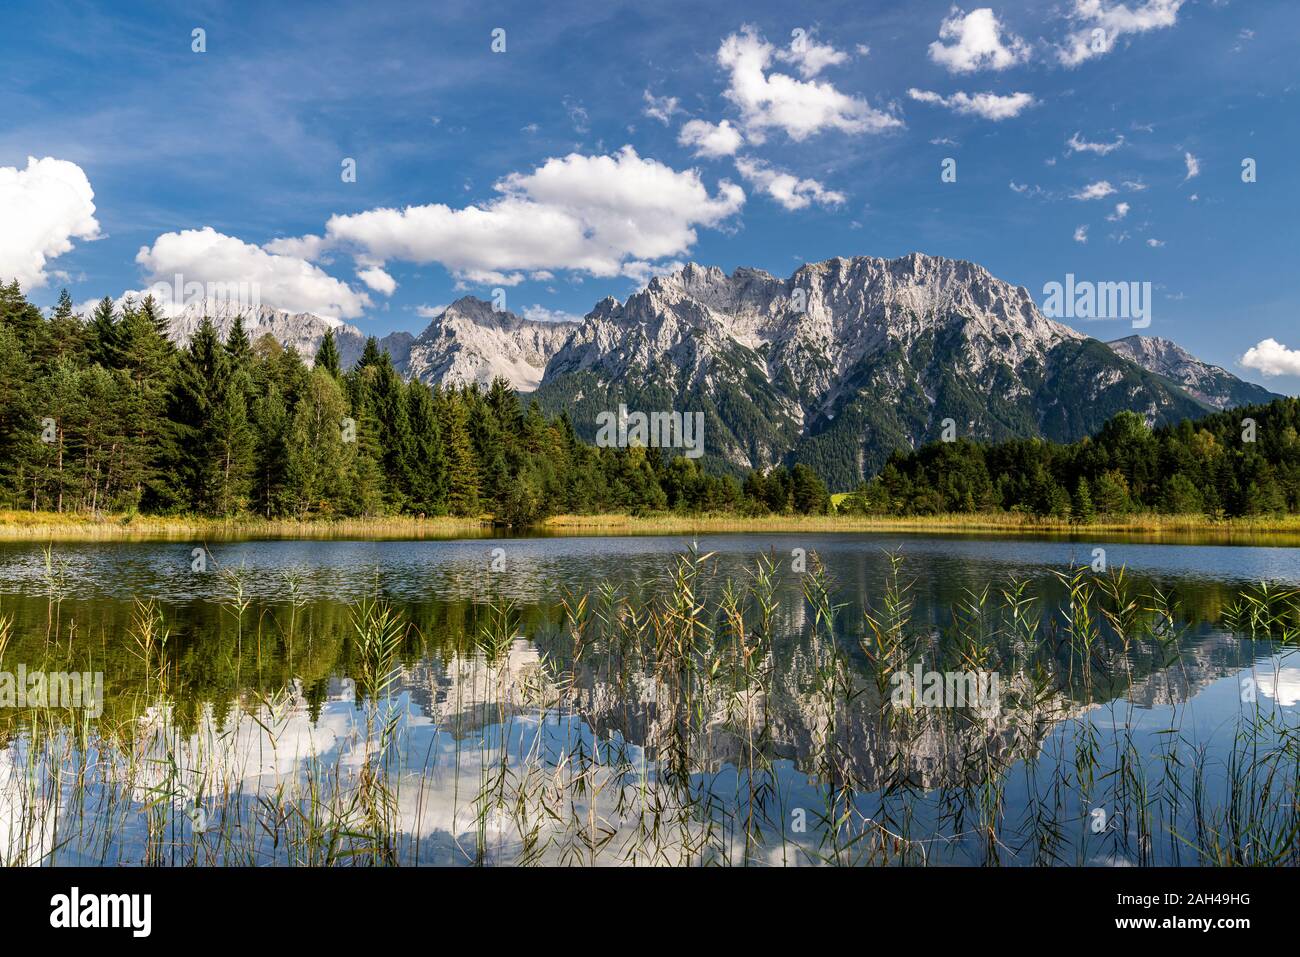 Autriche, Tyrol, vue panoramique sur les montagnes de Wetterstein reflétant le lac Weisssee et forêt environnante Banque D'Images